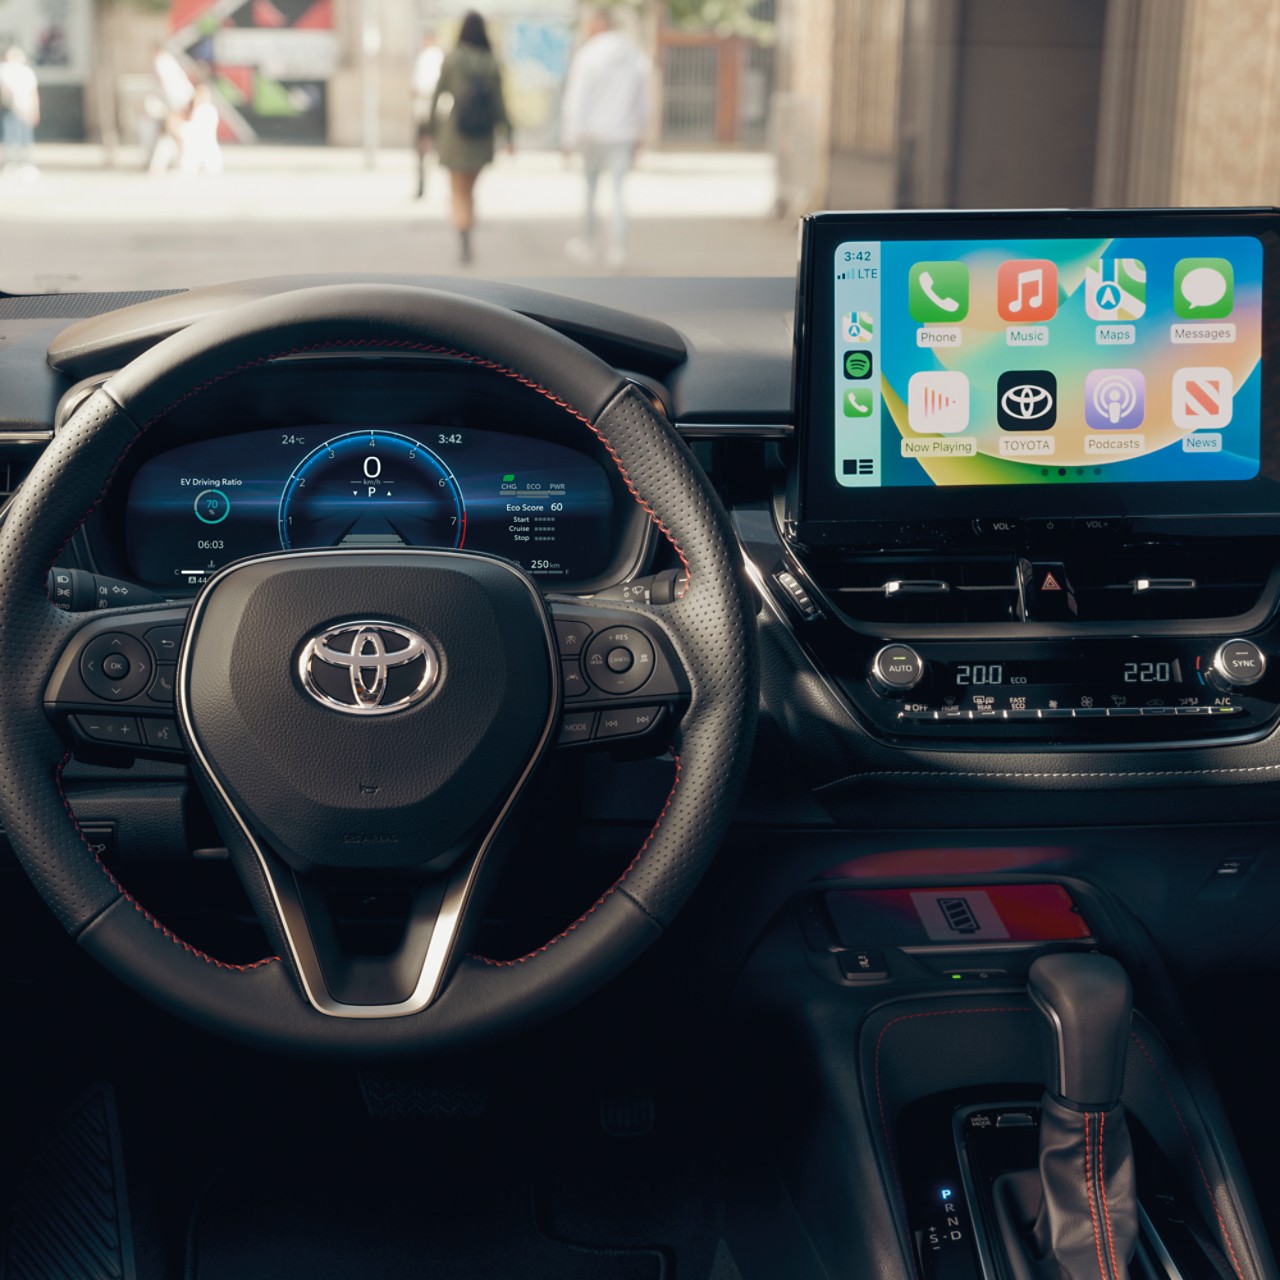 Uno schermo tattile multimediale mostra la schermata home di Apple CarPlay in un veicolo Toyota con plancia degli strumenti nera.